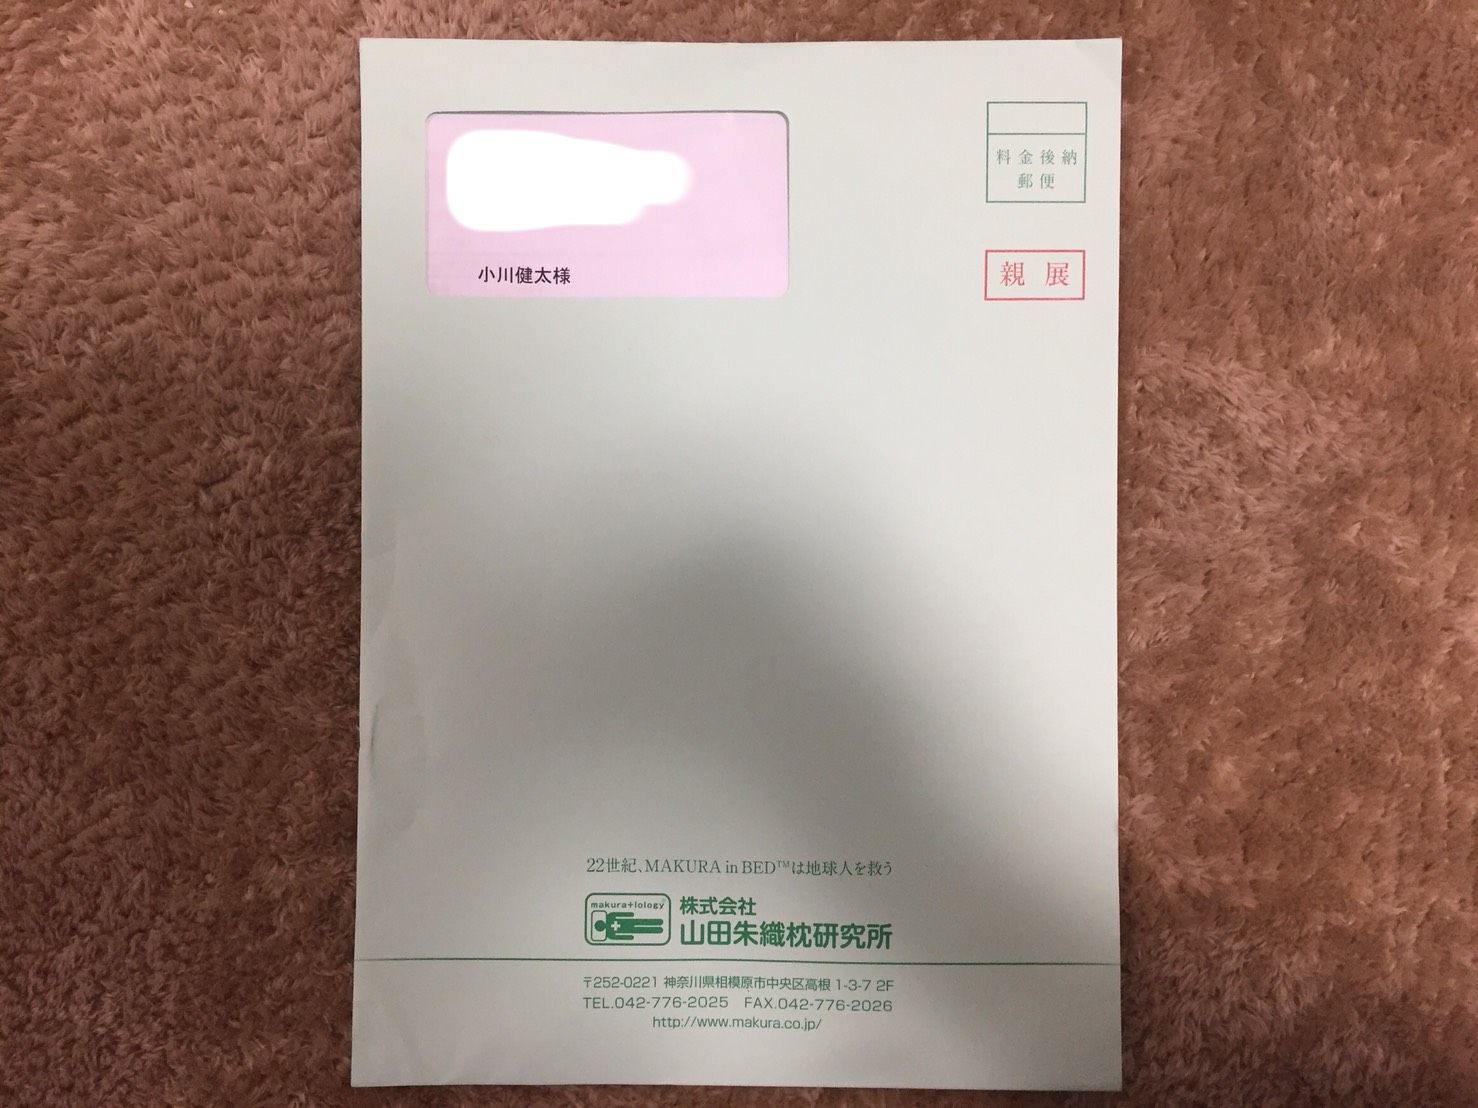 山田朱織枕研究所から「整形外科枕」のカルテが届きました。事前に問診票を記入してから向かいます。（全部公開します）